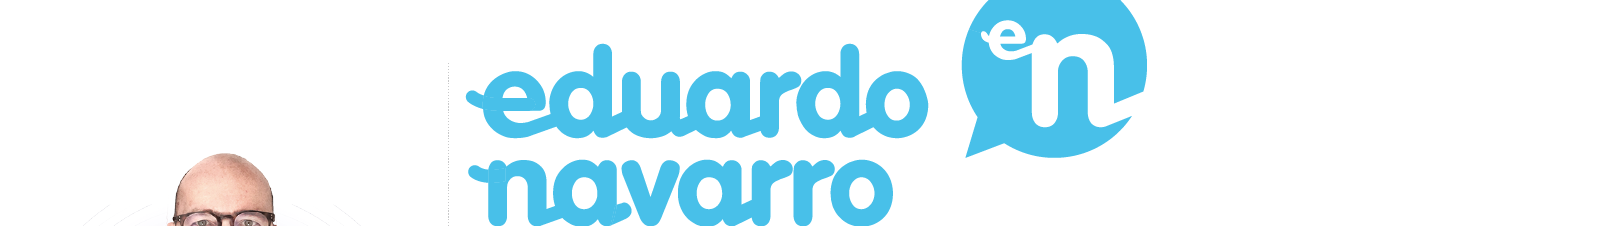 Eduardo Navarro's profile banner